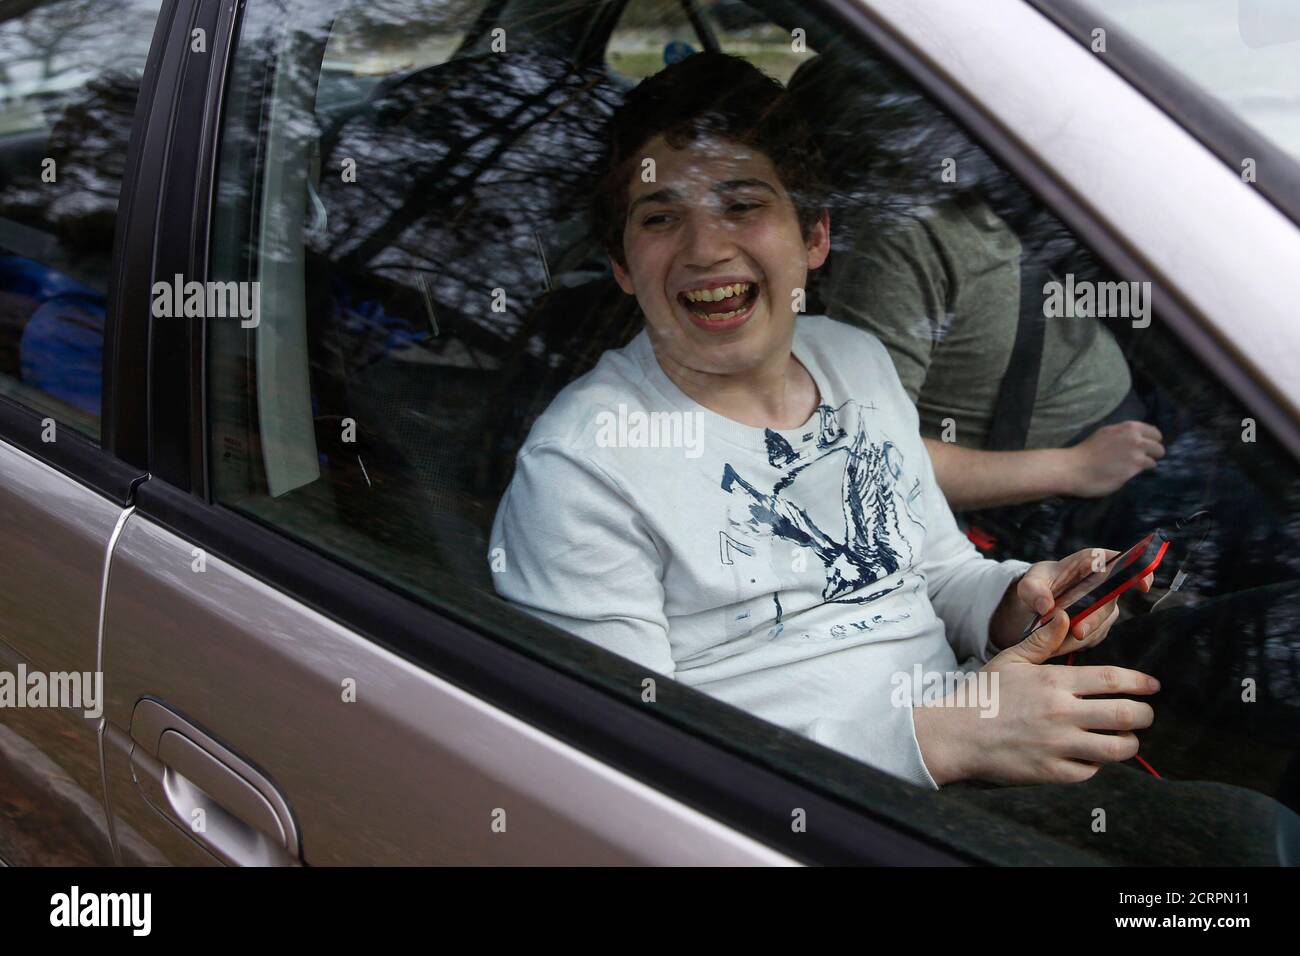 Matthew Kolen, 14, im Alter von acht mit Asperger Syndrom, lächelt beim  hören seine Kopfhörer in Long Island, New York 1. April 2014 diagnostiziert  wurde. Asperger-Syndrom ist eine Autismus-Spektrum-Störungen (ASD), die auf